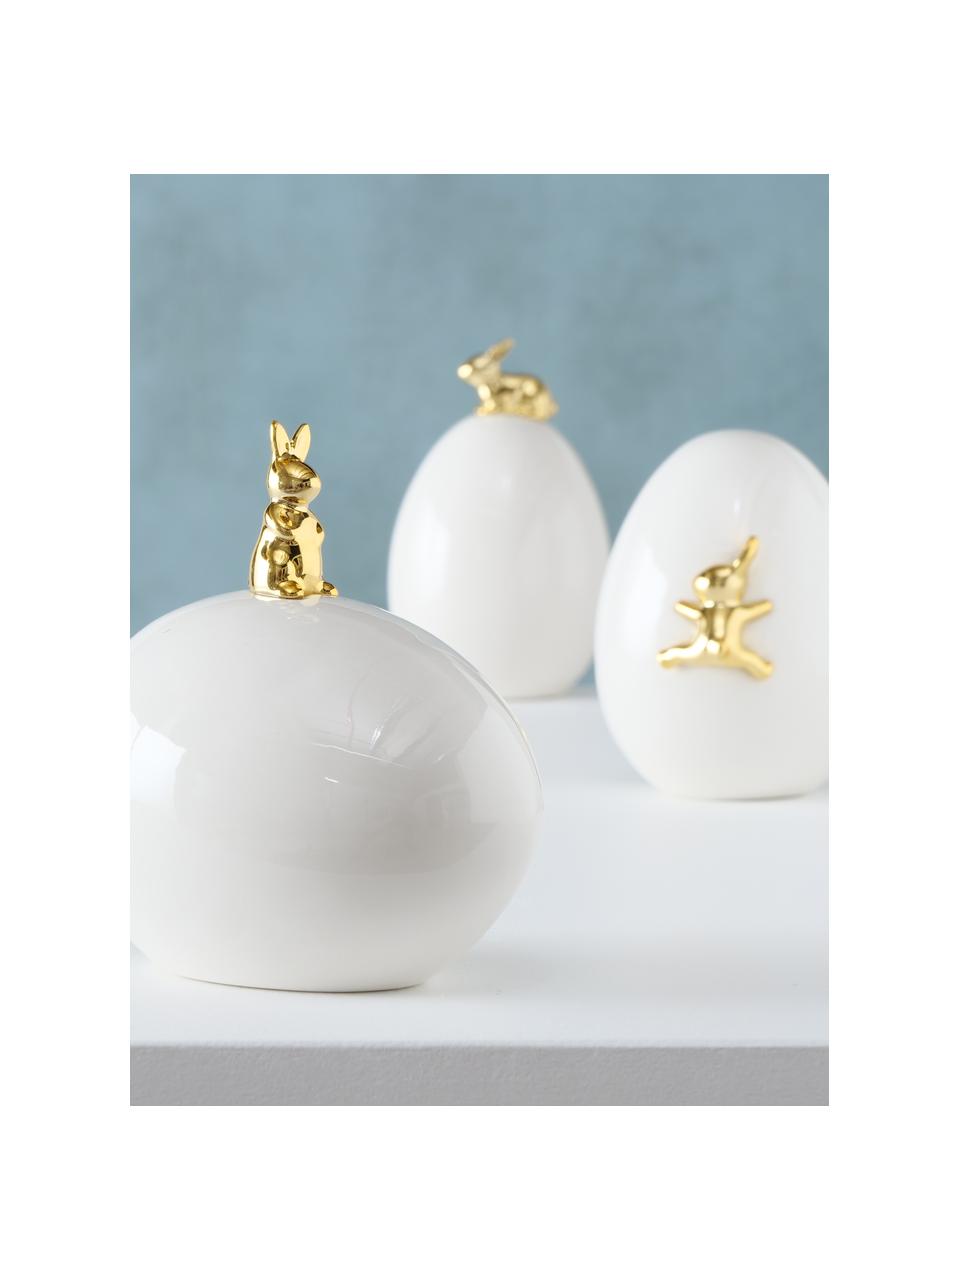 Deko-Objekte-Set Laure, 3-tlg., Porzellan, Weiß, Goldfarben, Ø 9 cm